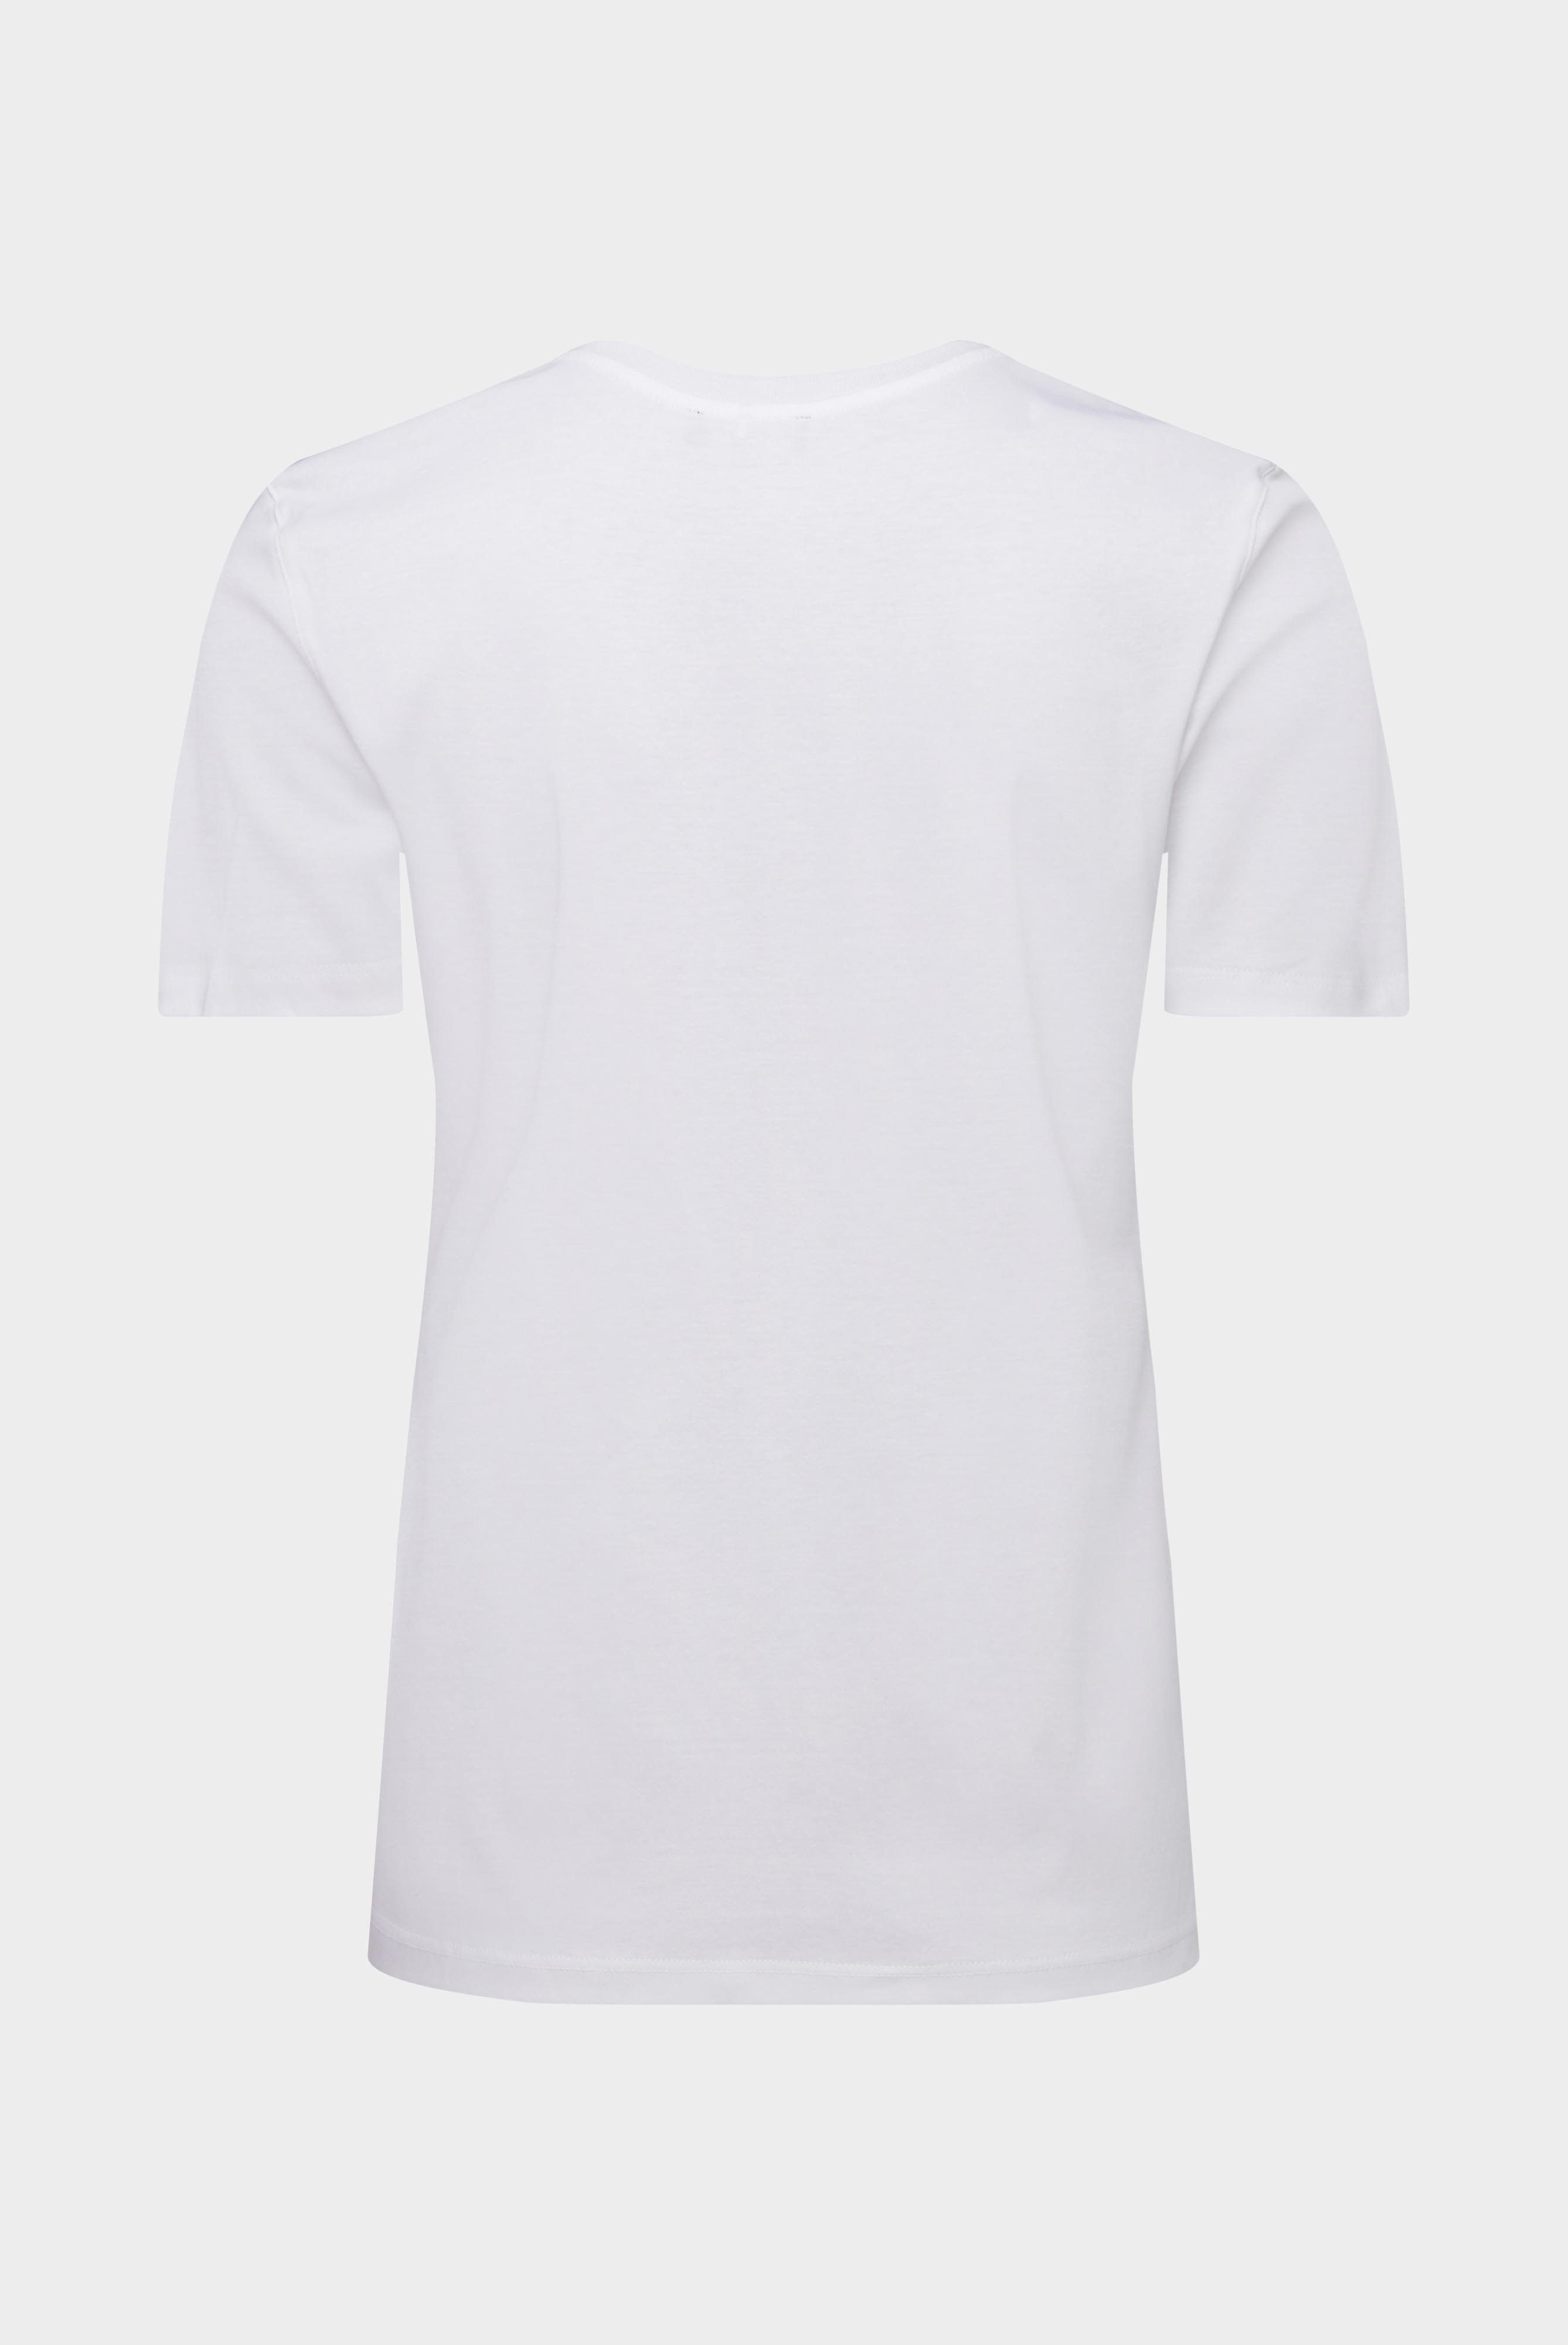 Tops & T-Shirts+Jersey T-Shirt+05.6384.18.180031.000.46